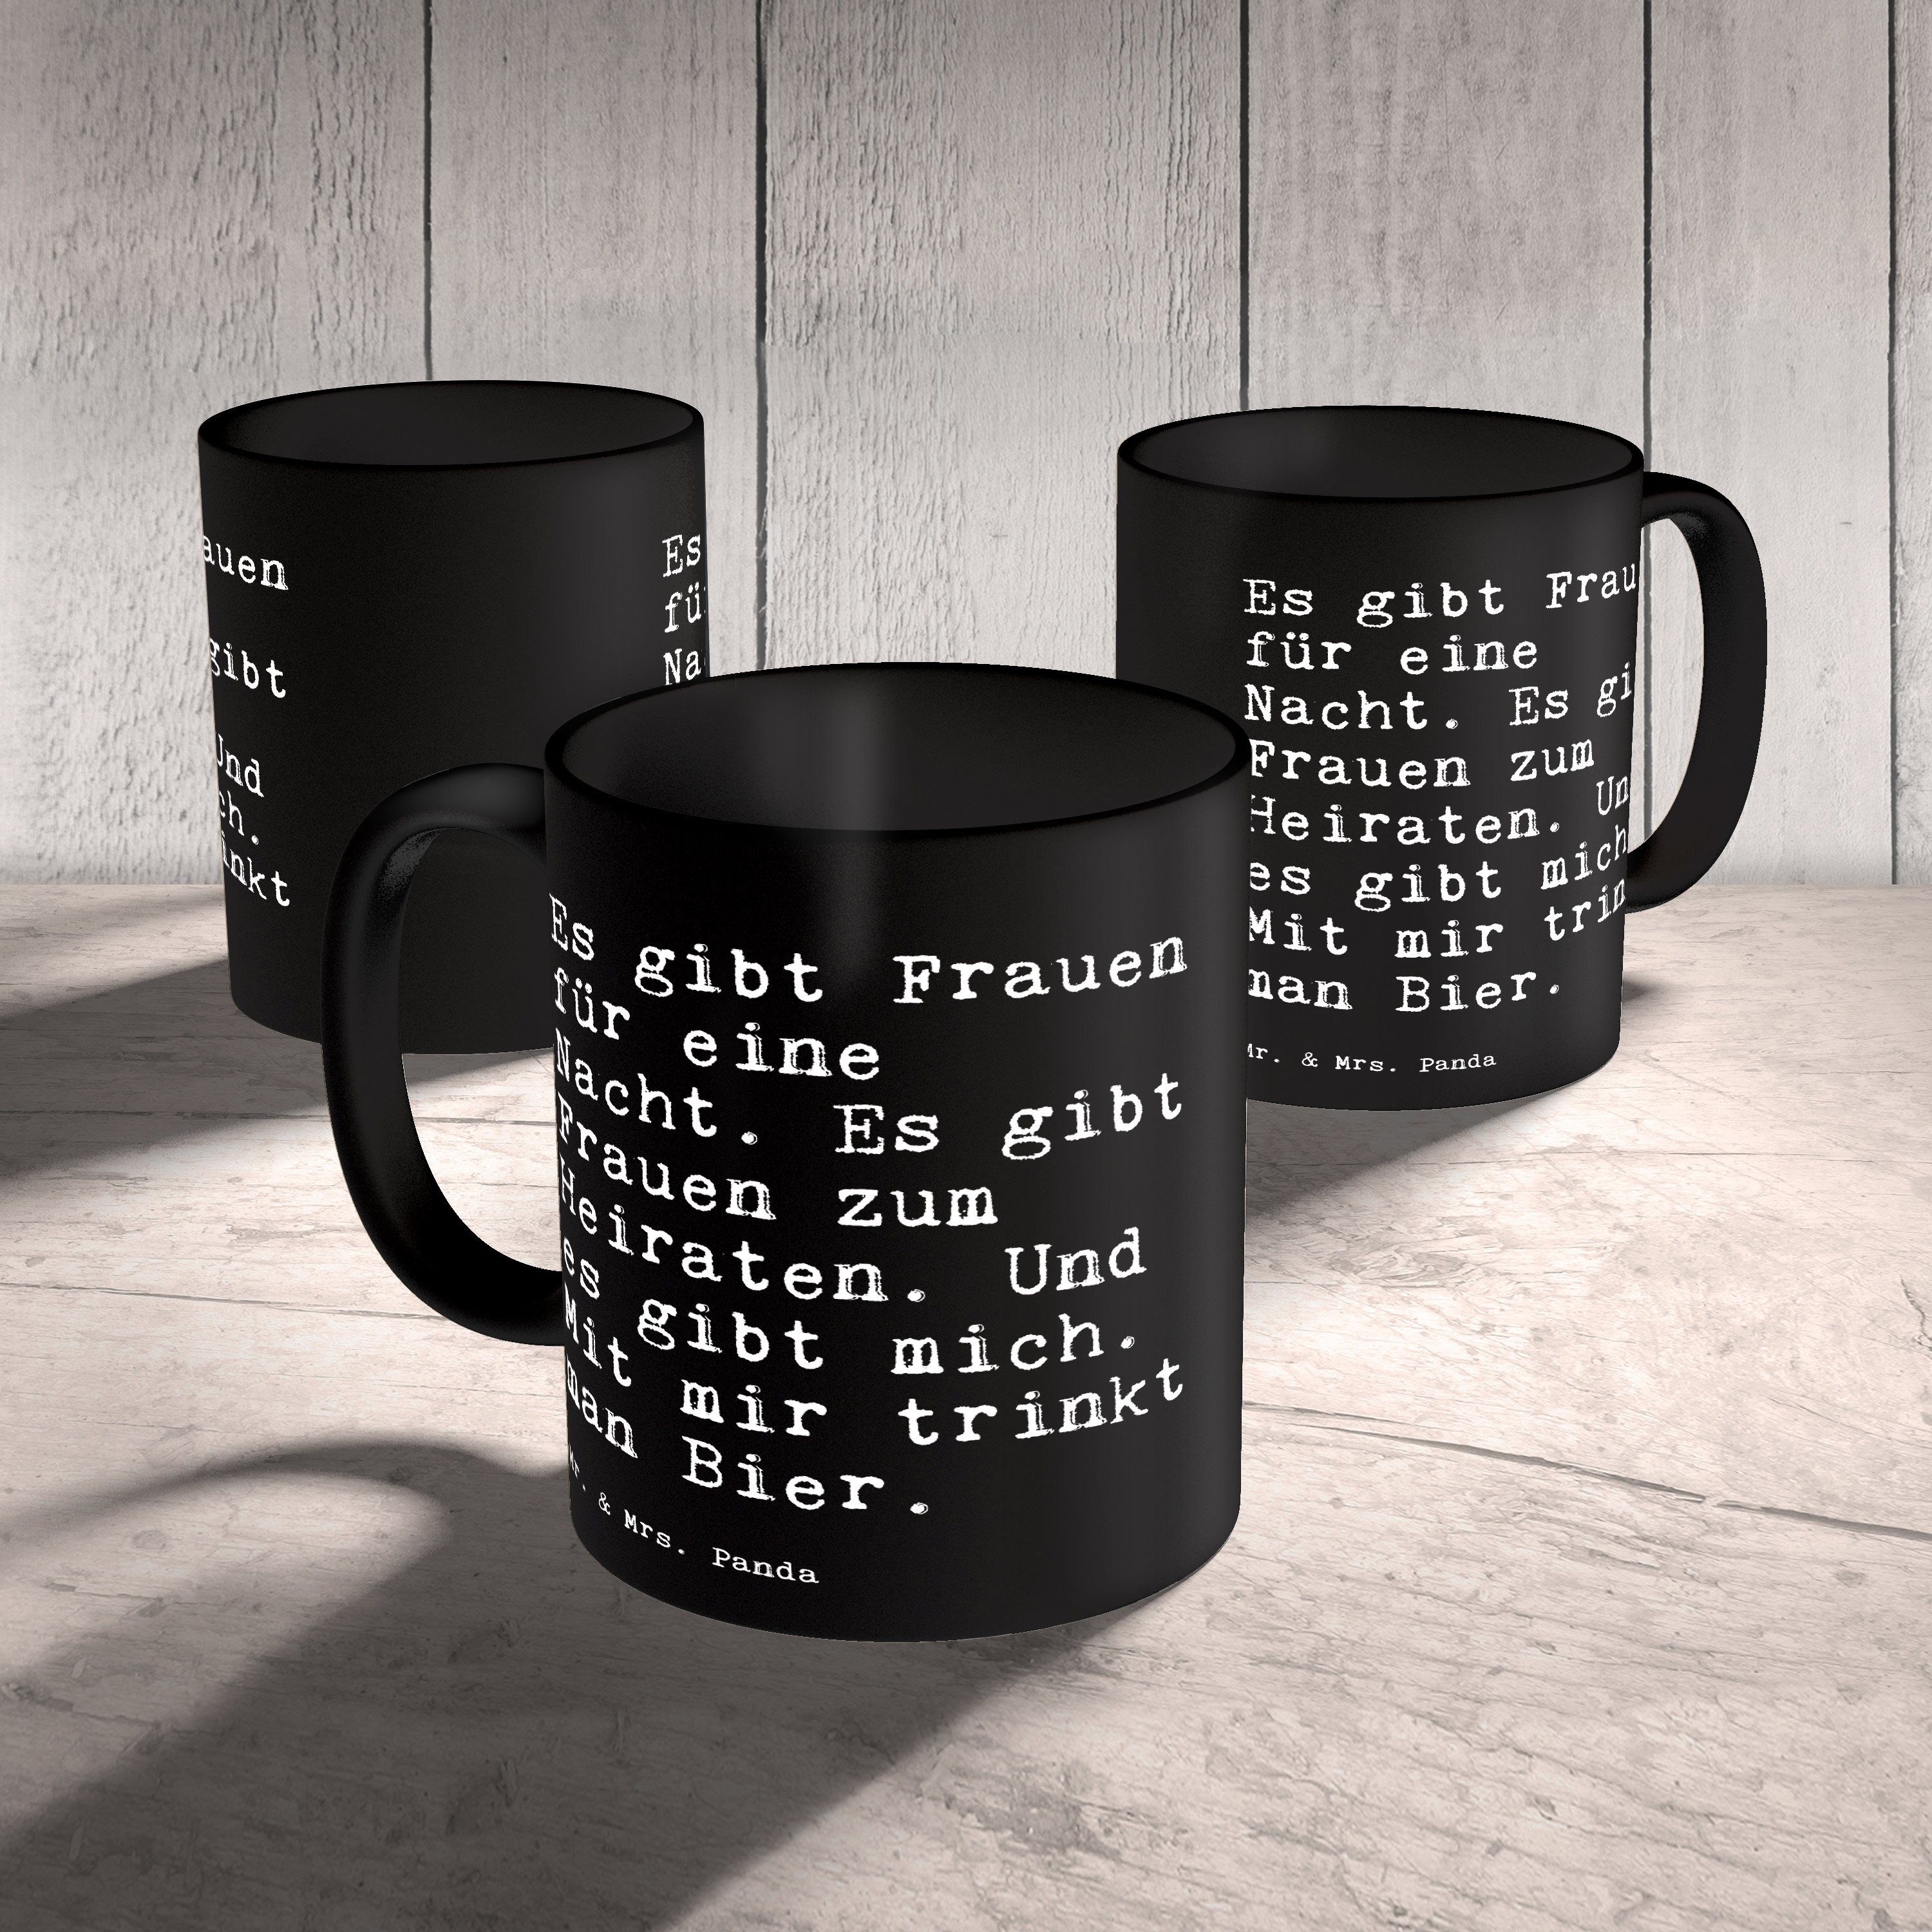 & - Panda Schwarz Schwarz Schwester, gibt Kaffee, Tasse Mrs. für... - Zitate, Geschenk, Frauen Mr. Es Keramik